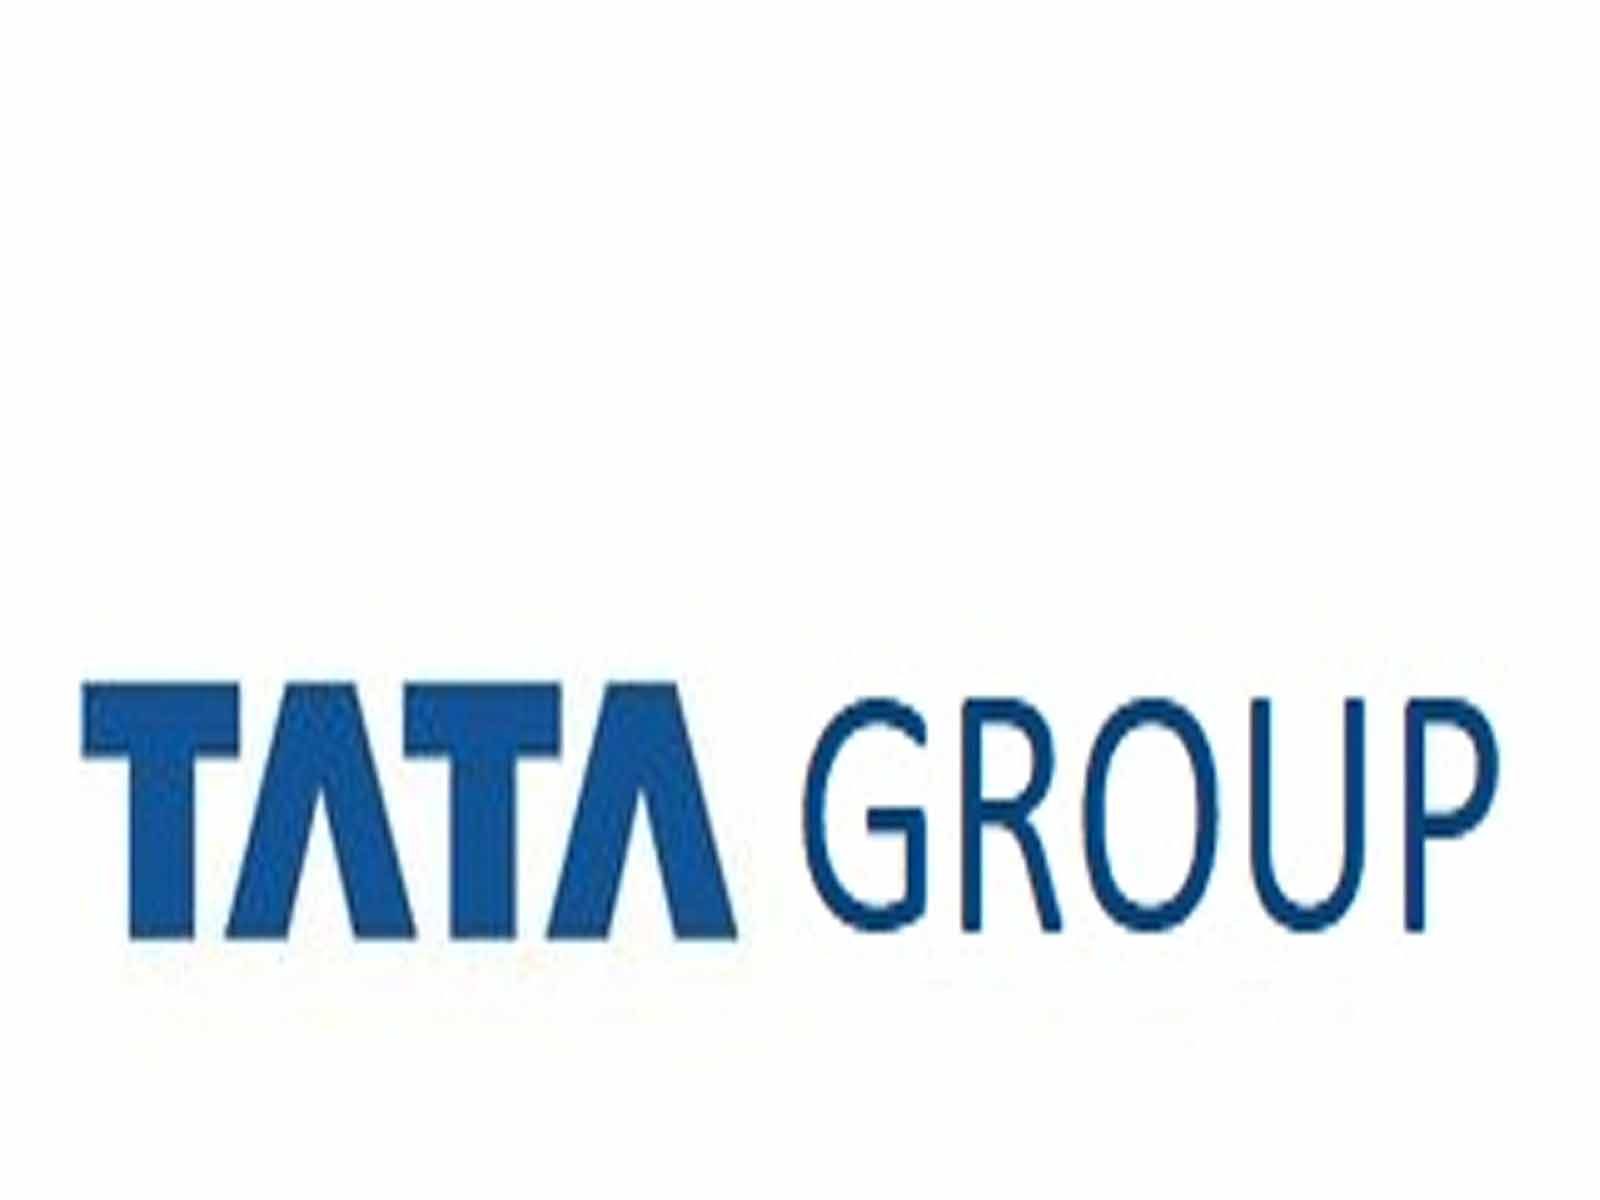 Tata Group ਦੀਆਂ ਦੋ ਕੰਪਨੀਆਂ ਦੇ ਰਲੇਵੇਂ 'ਚ ਕਿੰਨਾ ਲੱਗੇਗਾ ਸਮਾਂ, ਪੜ੍ਹੋ ਪੂਰੀ ਖਬਰ 